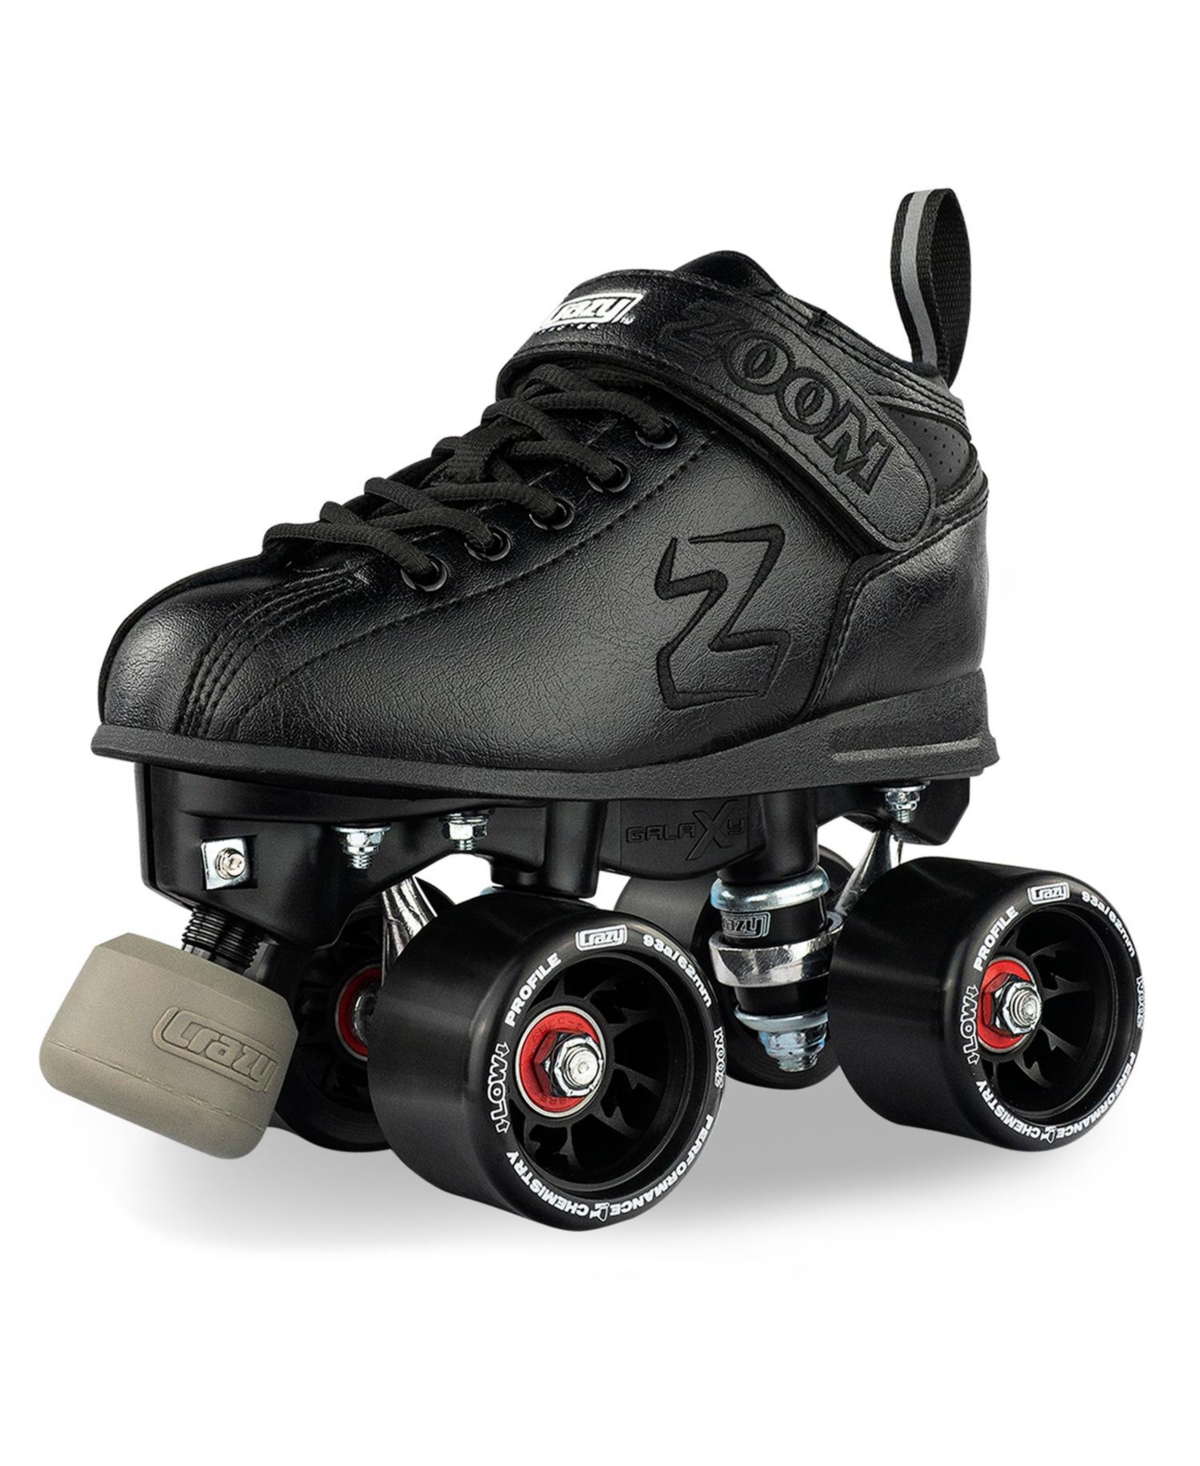 Zoom Roller Skates - High Performance Speed Skates For Men - Black